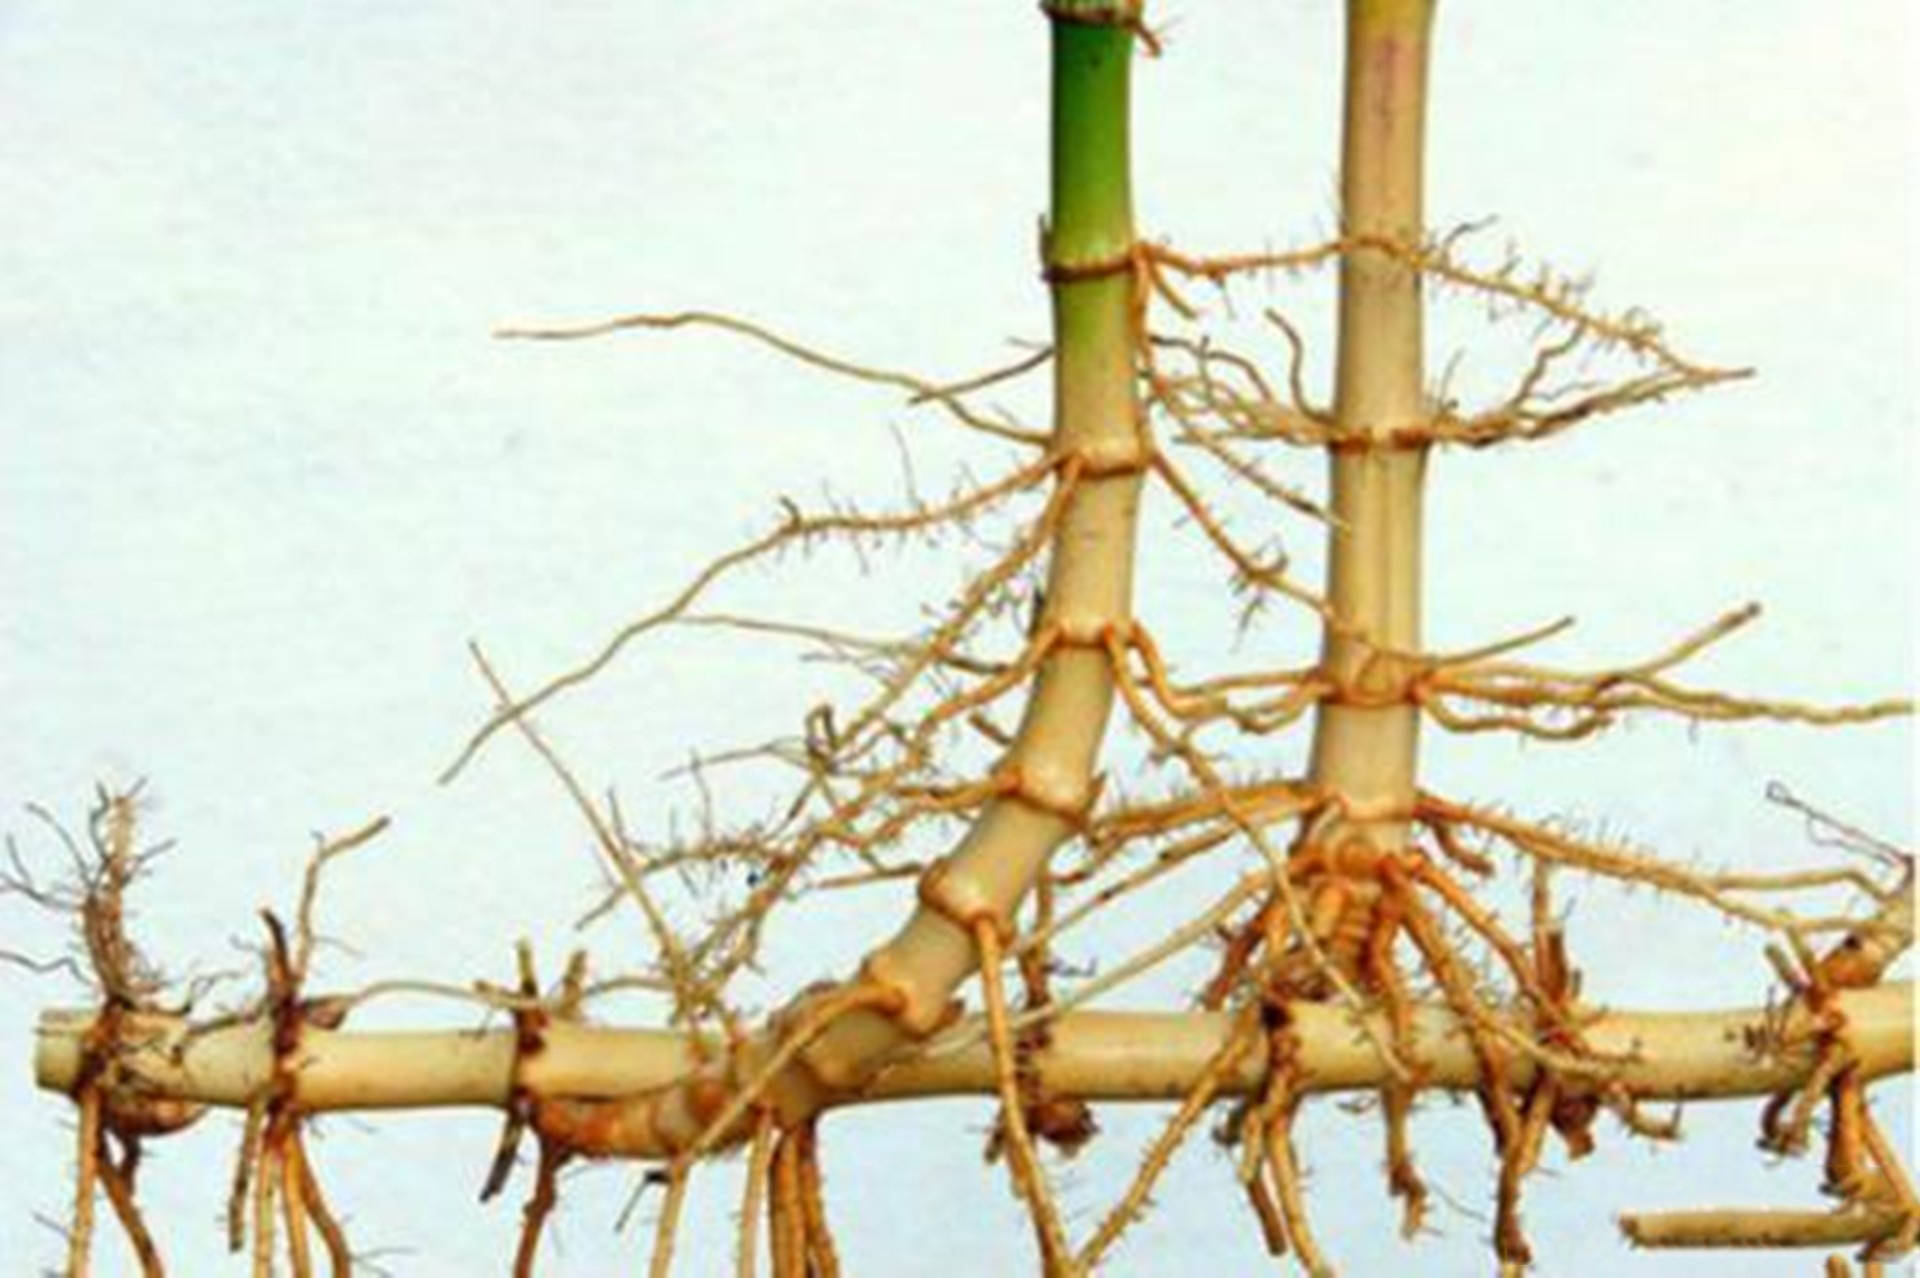 竹子的生长过程示意图图片